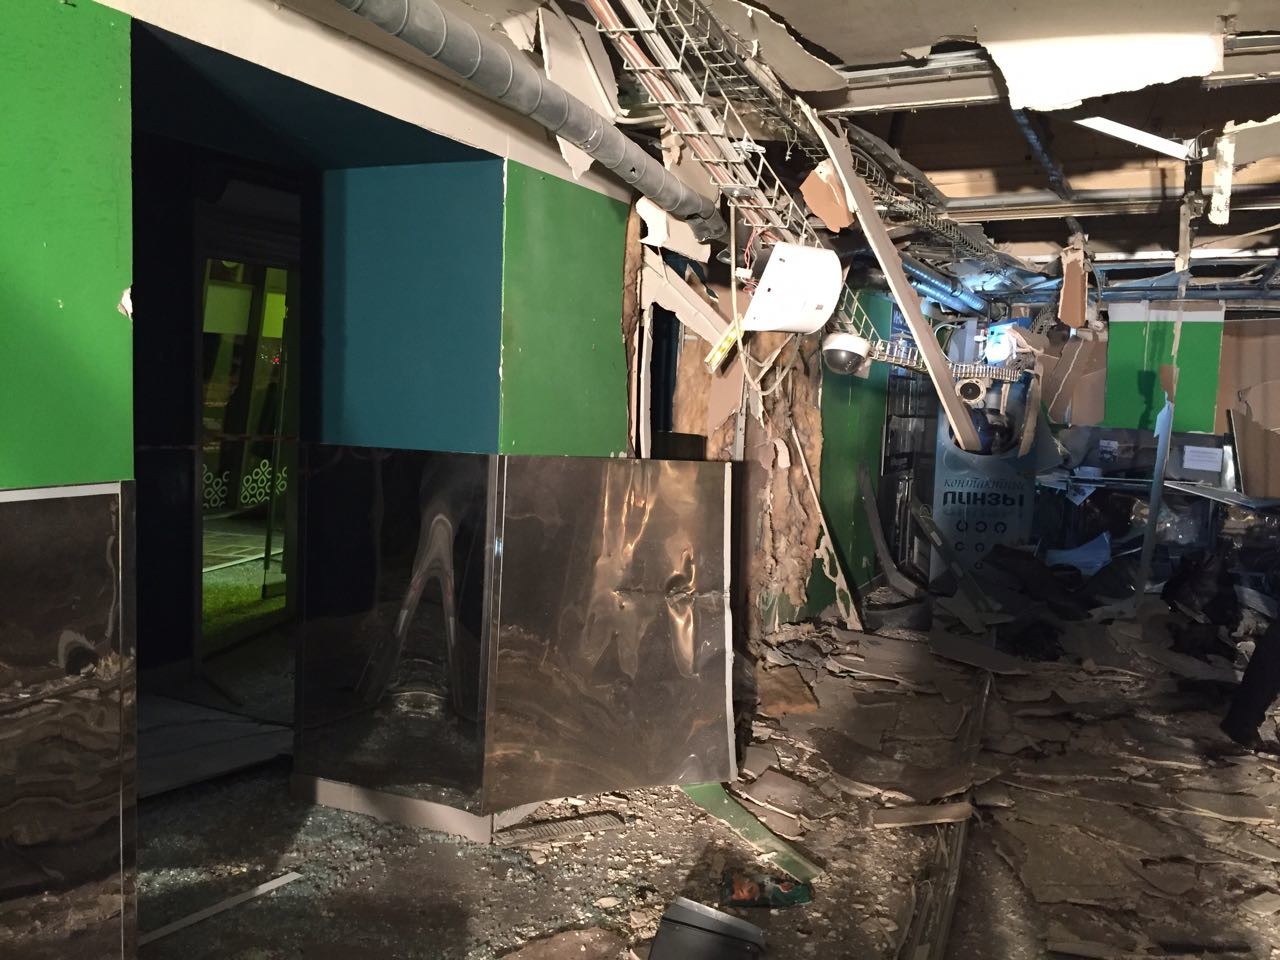 Russie : une explosion dans un supermarché à Saint-Pétersbourg fait 13 blessés (IMAGES)